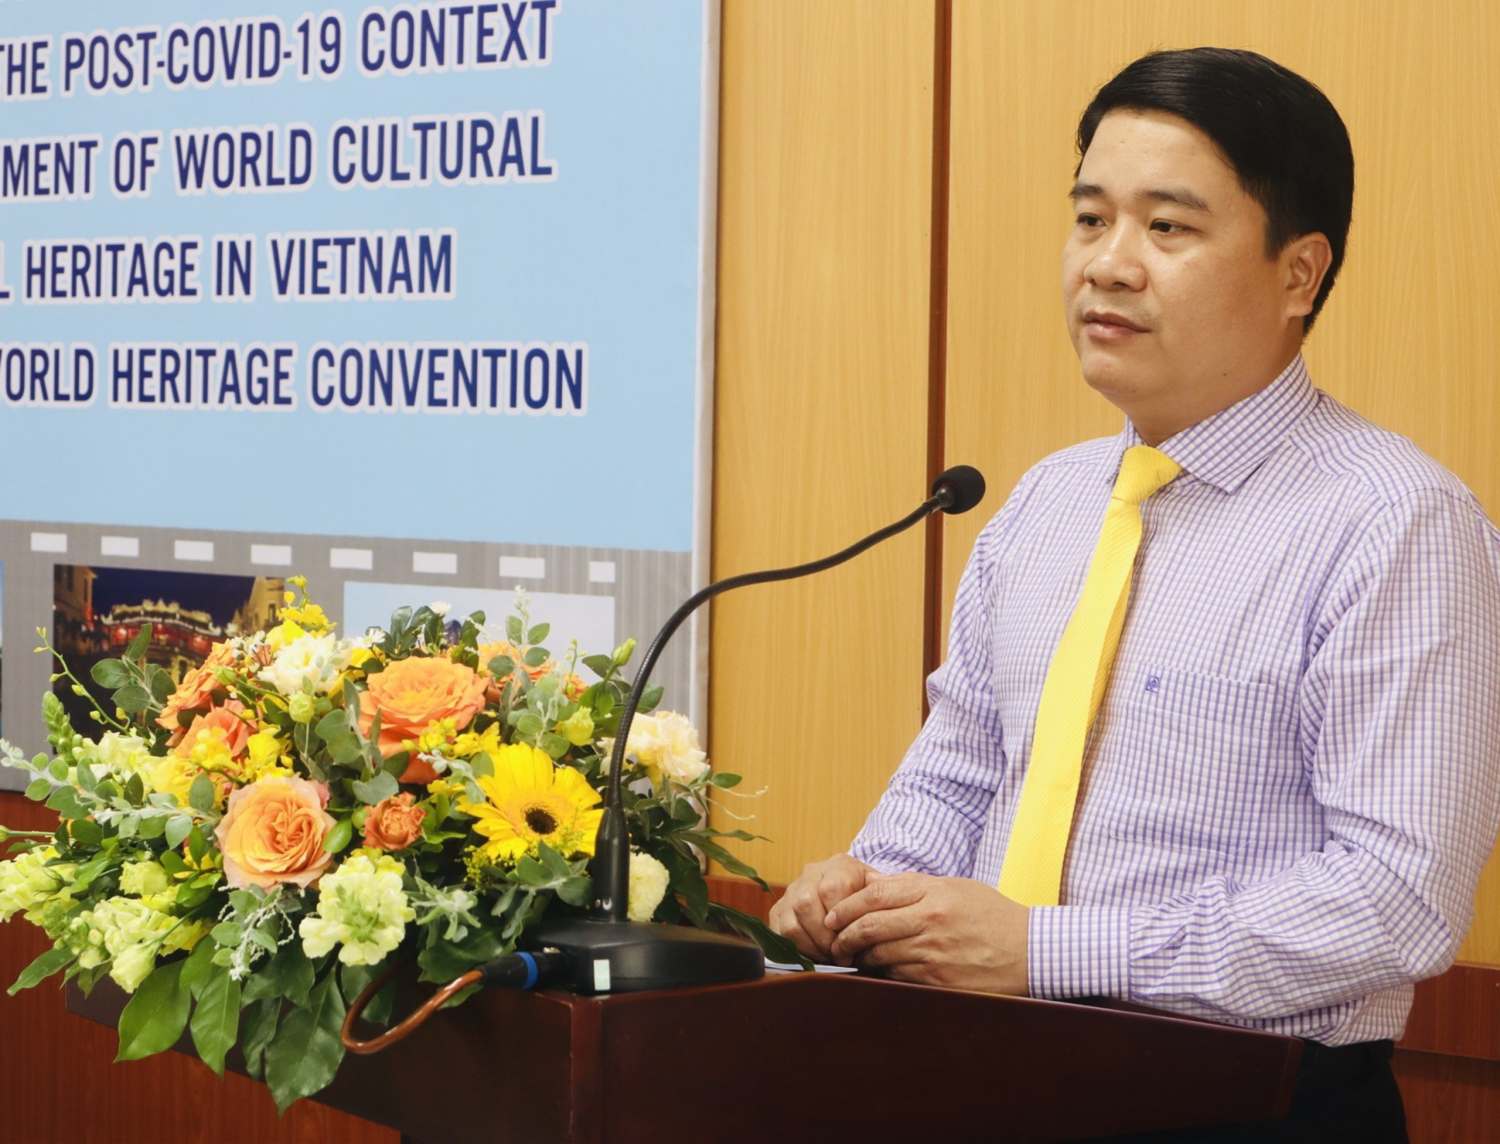 Đồng chí Trần Văn Tân - Ủy viên Ban Thường vụ Tỉnh ủy, Phó Chủ tịch UBND tỉnh Quảng Nam phát biểu tại hôi thảo